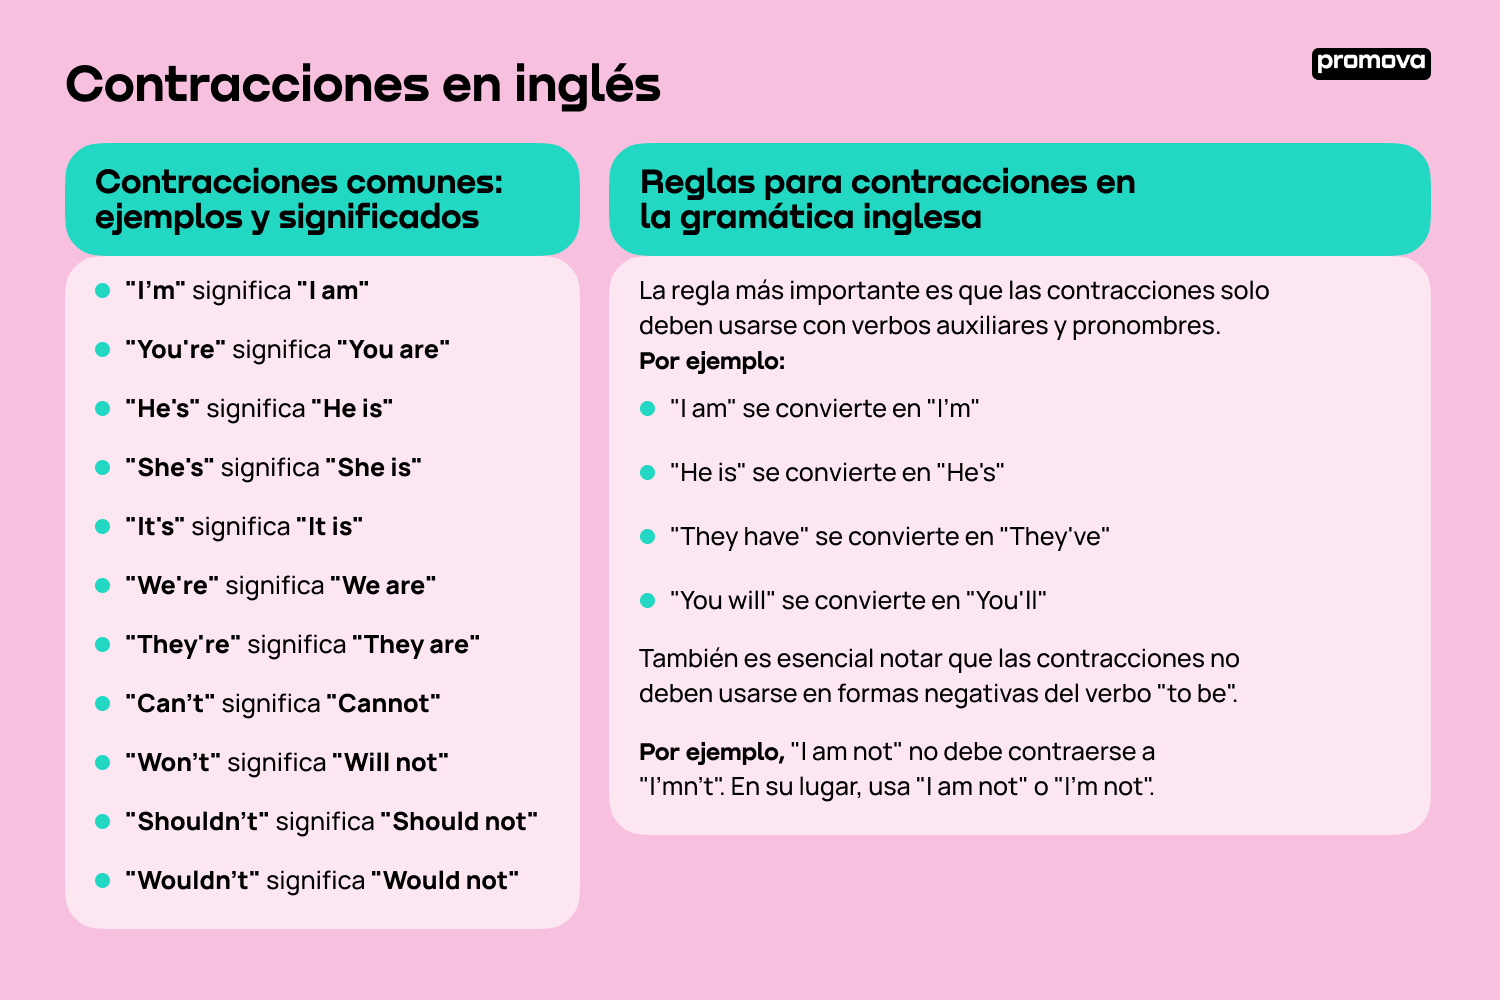 Aprende sobre las contracciones en inglés: Guía completa en inglés